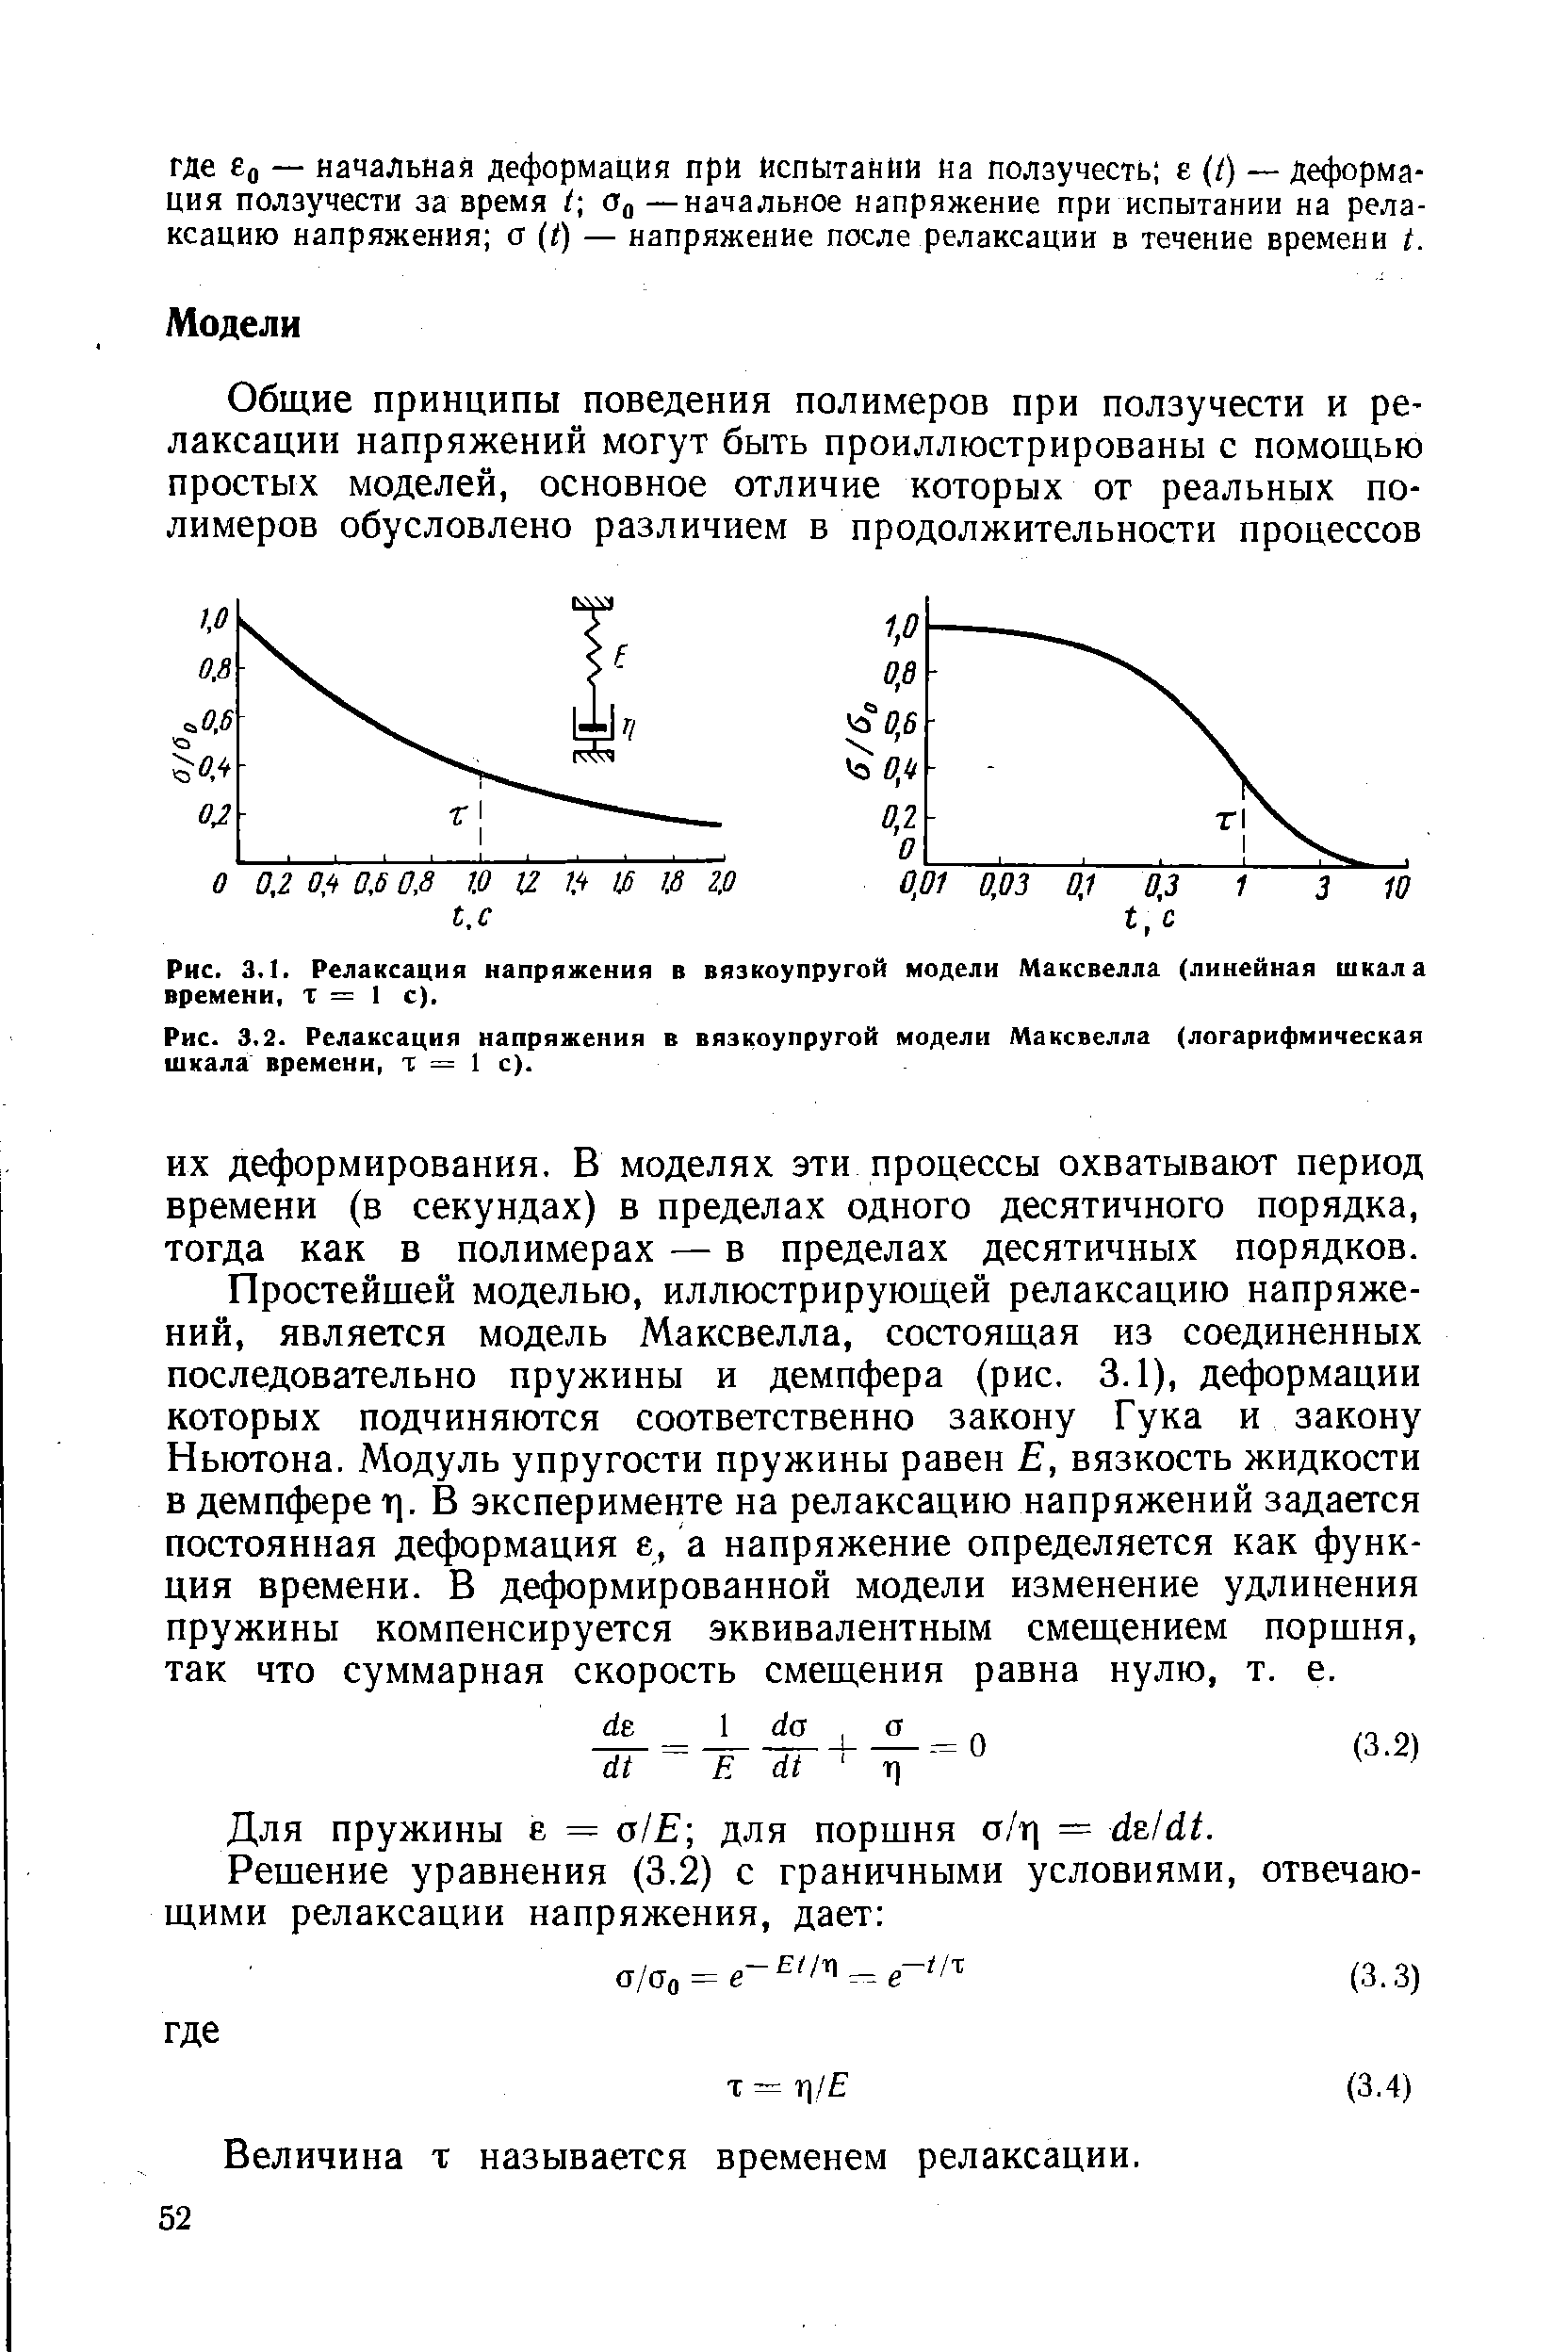 Рис. 3.1. Релаксация напряжения в вязкоупругой модели Максвелла (линейная шкала времени, т = 1 с).
